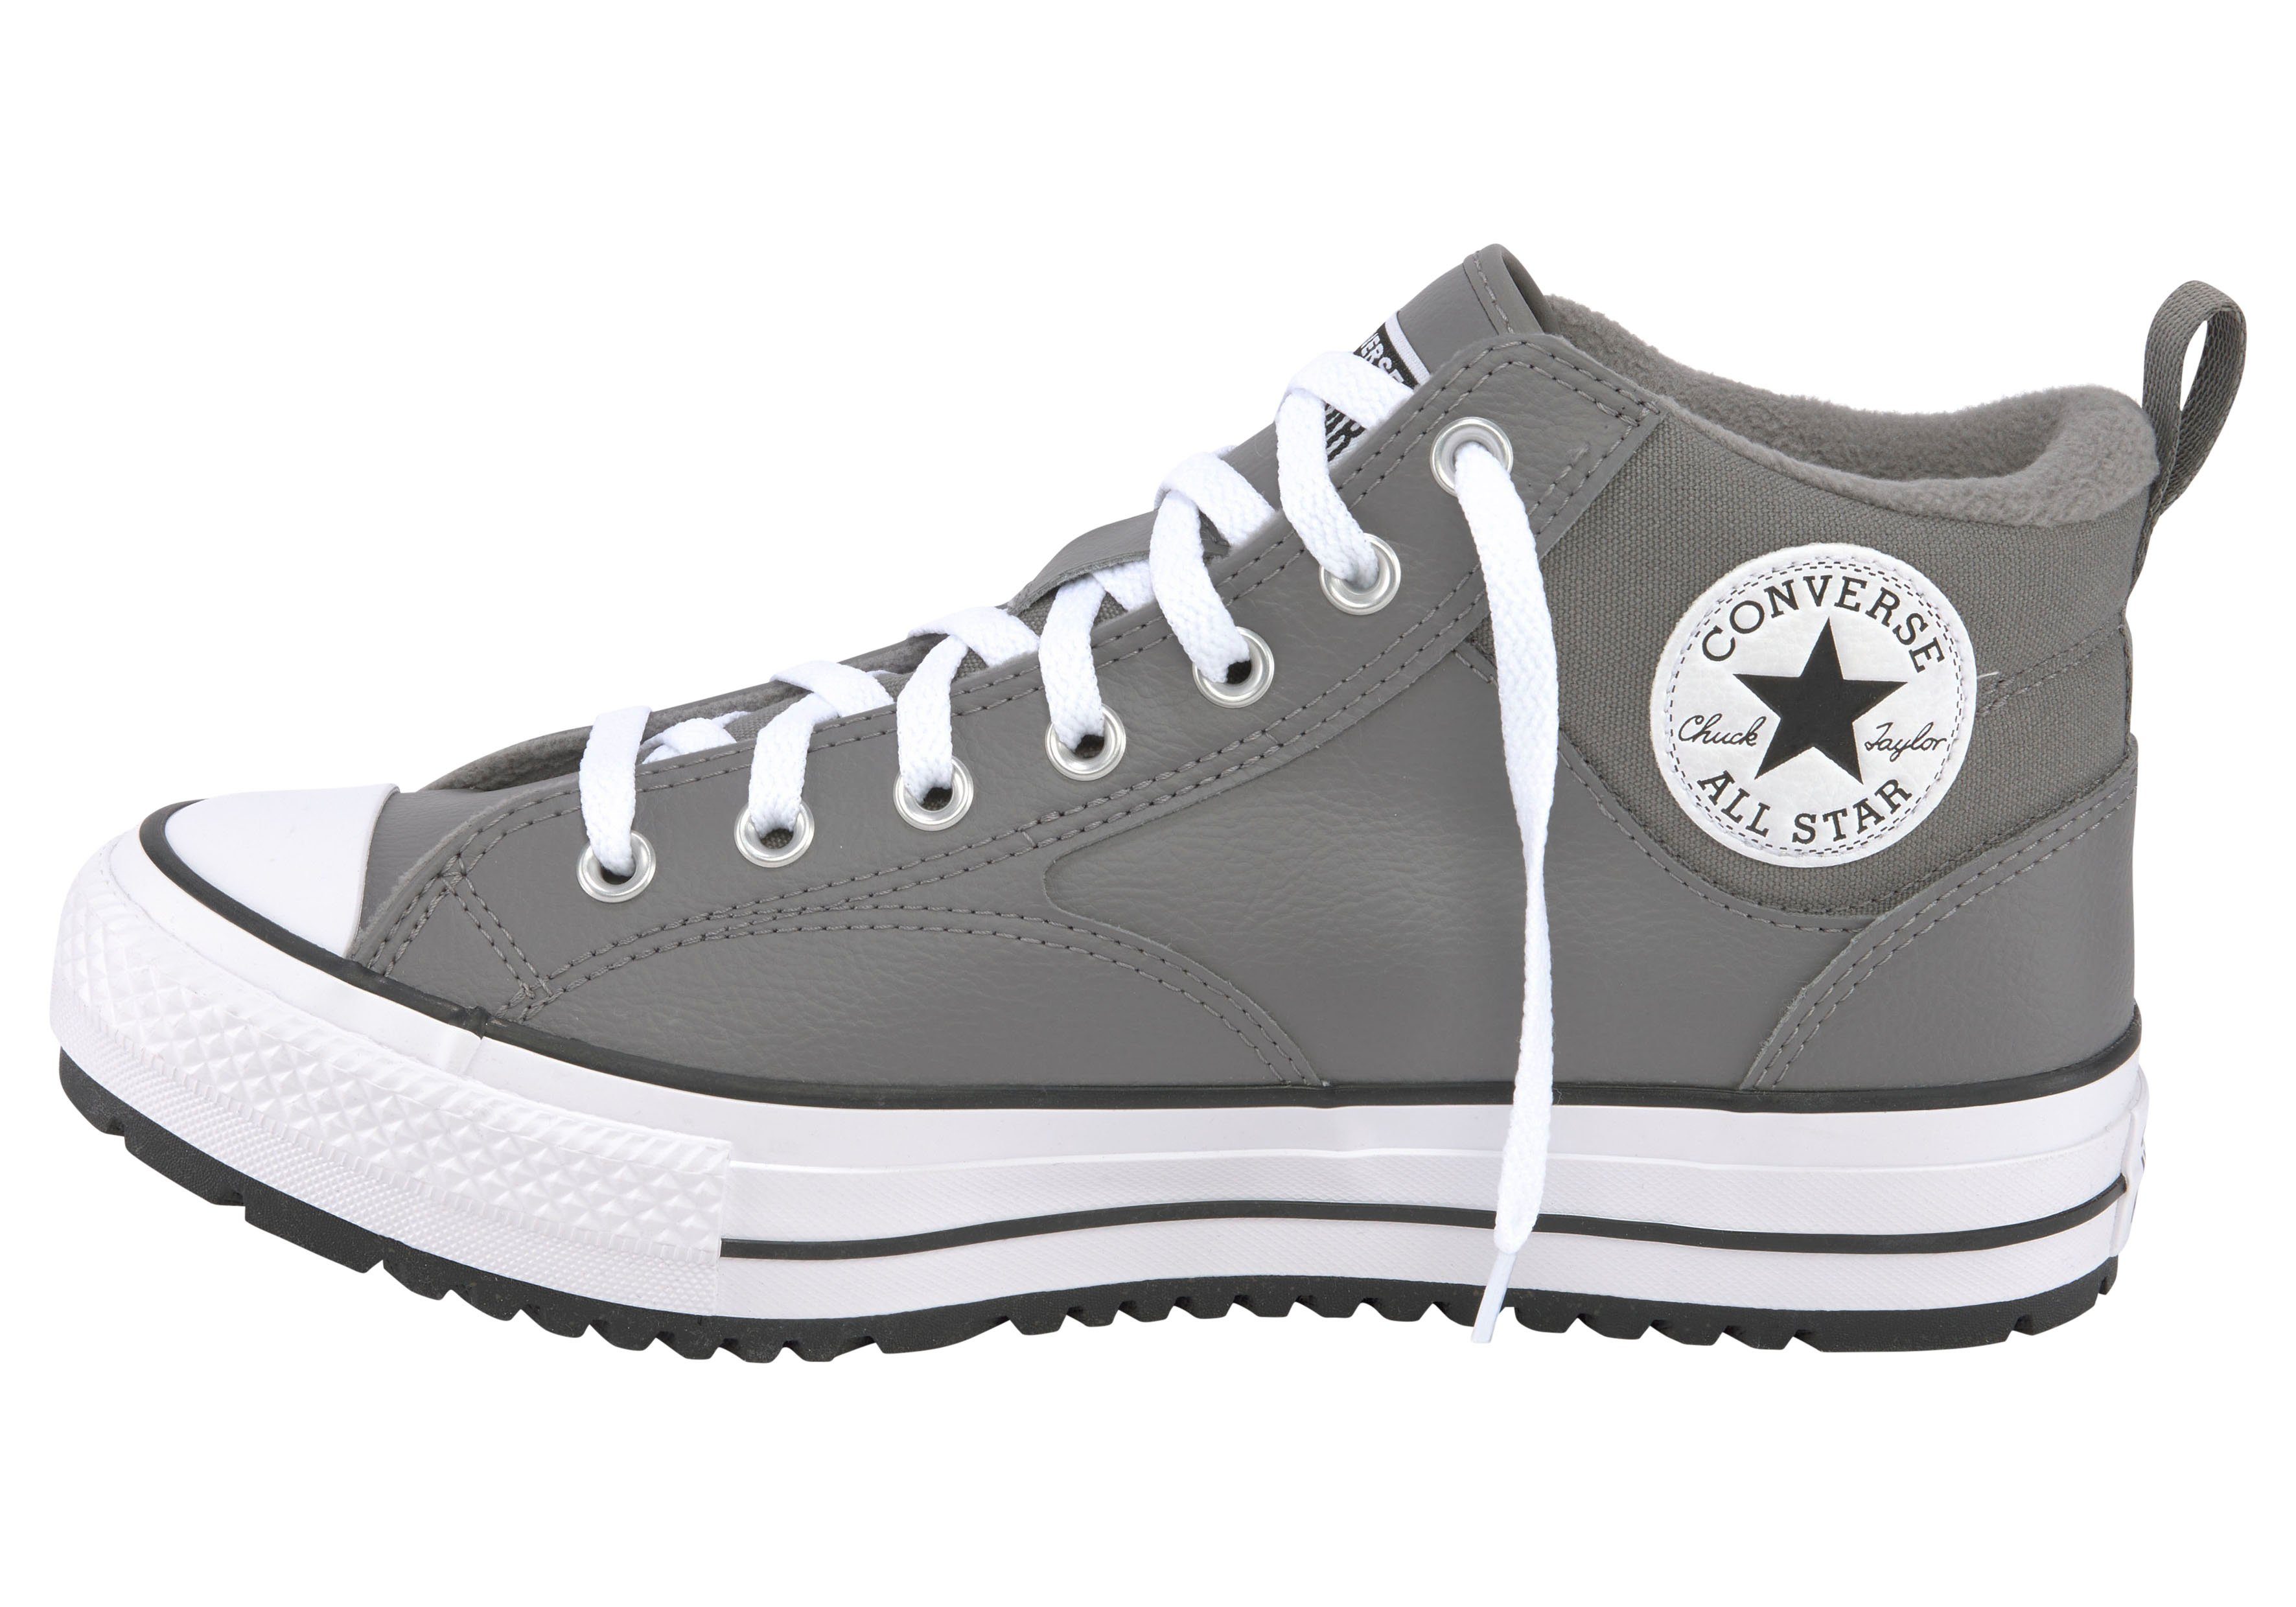 MALDEN Converse TAYLOR CHUCK STREET STAR Warmfutter ALL Sneakerboots